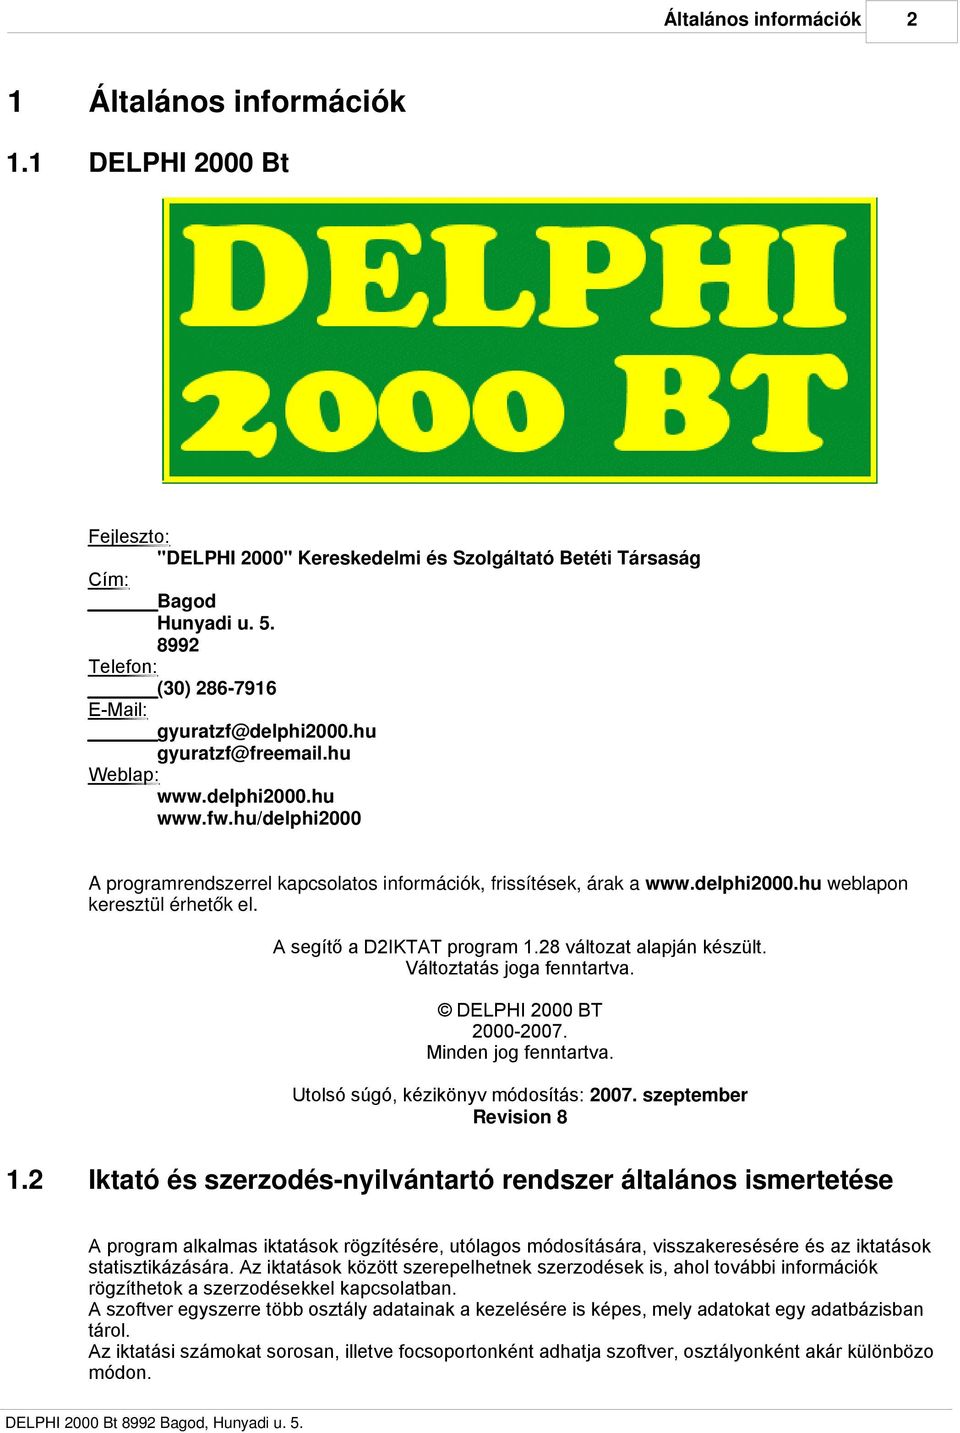 delphi2000.hu weblapon keresztül érhetők el. A segítő a D2IKTAT program 1.28 változat alapján készült. Változtatás joga fenntartva. DELPHI 2000 BT 2000-2007. Minden jog fenntartva.